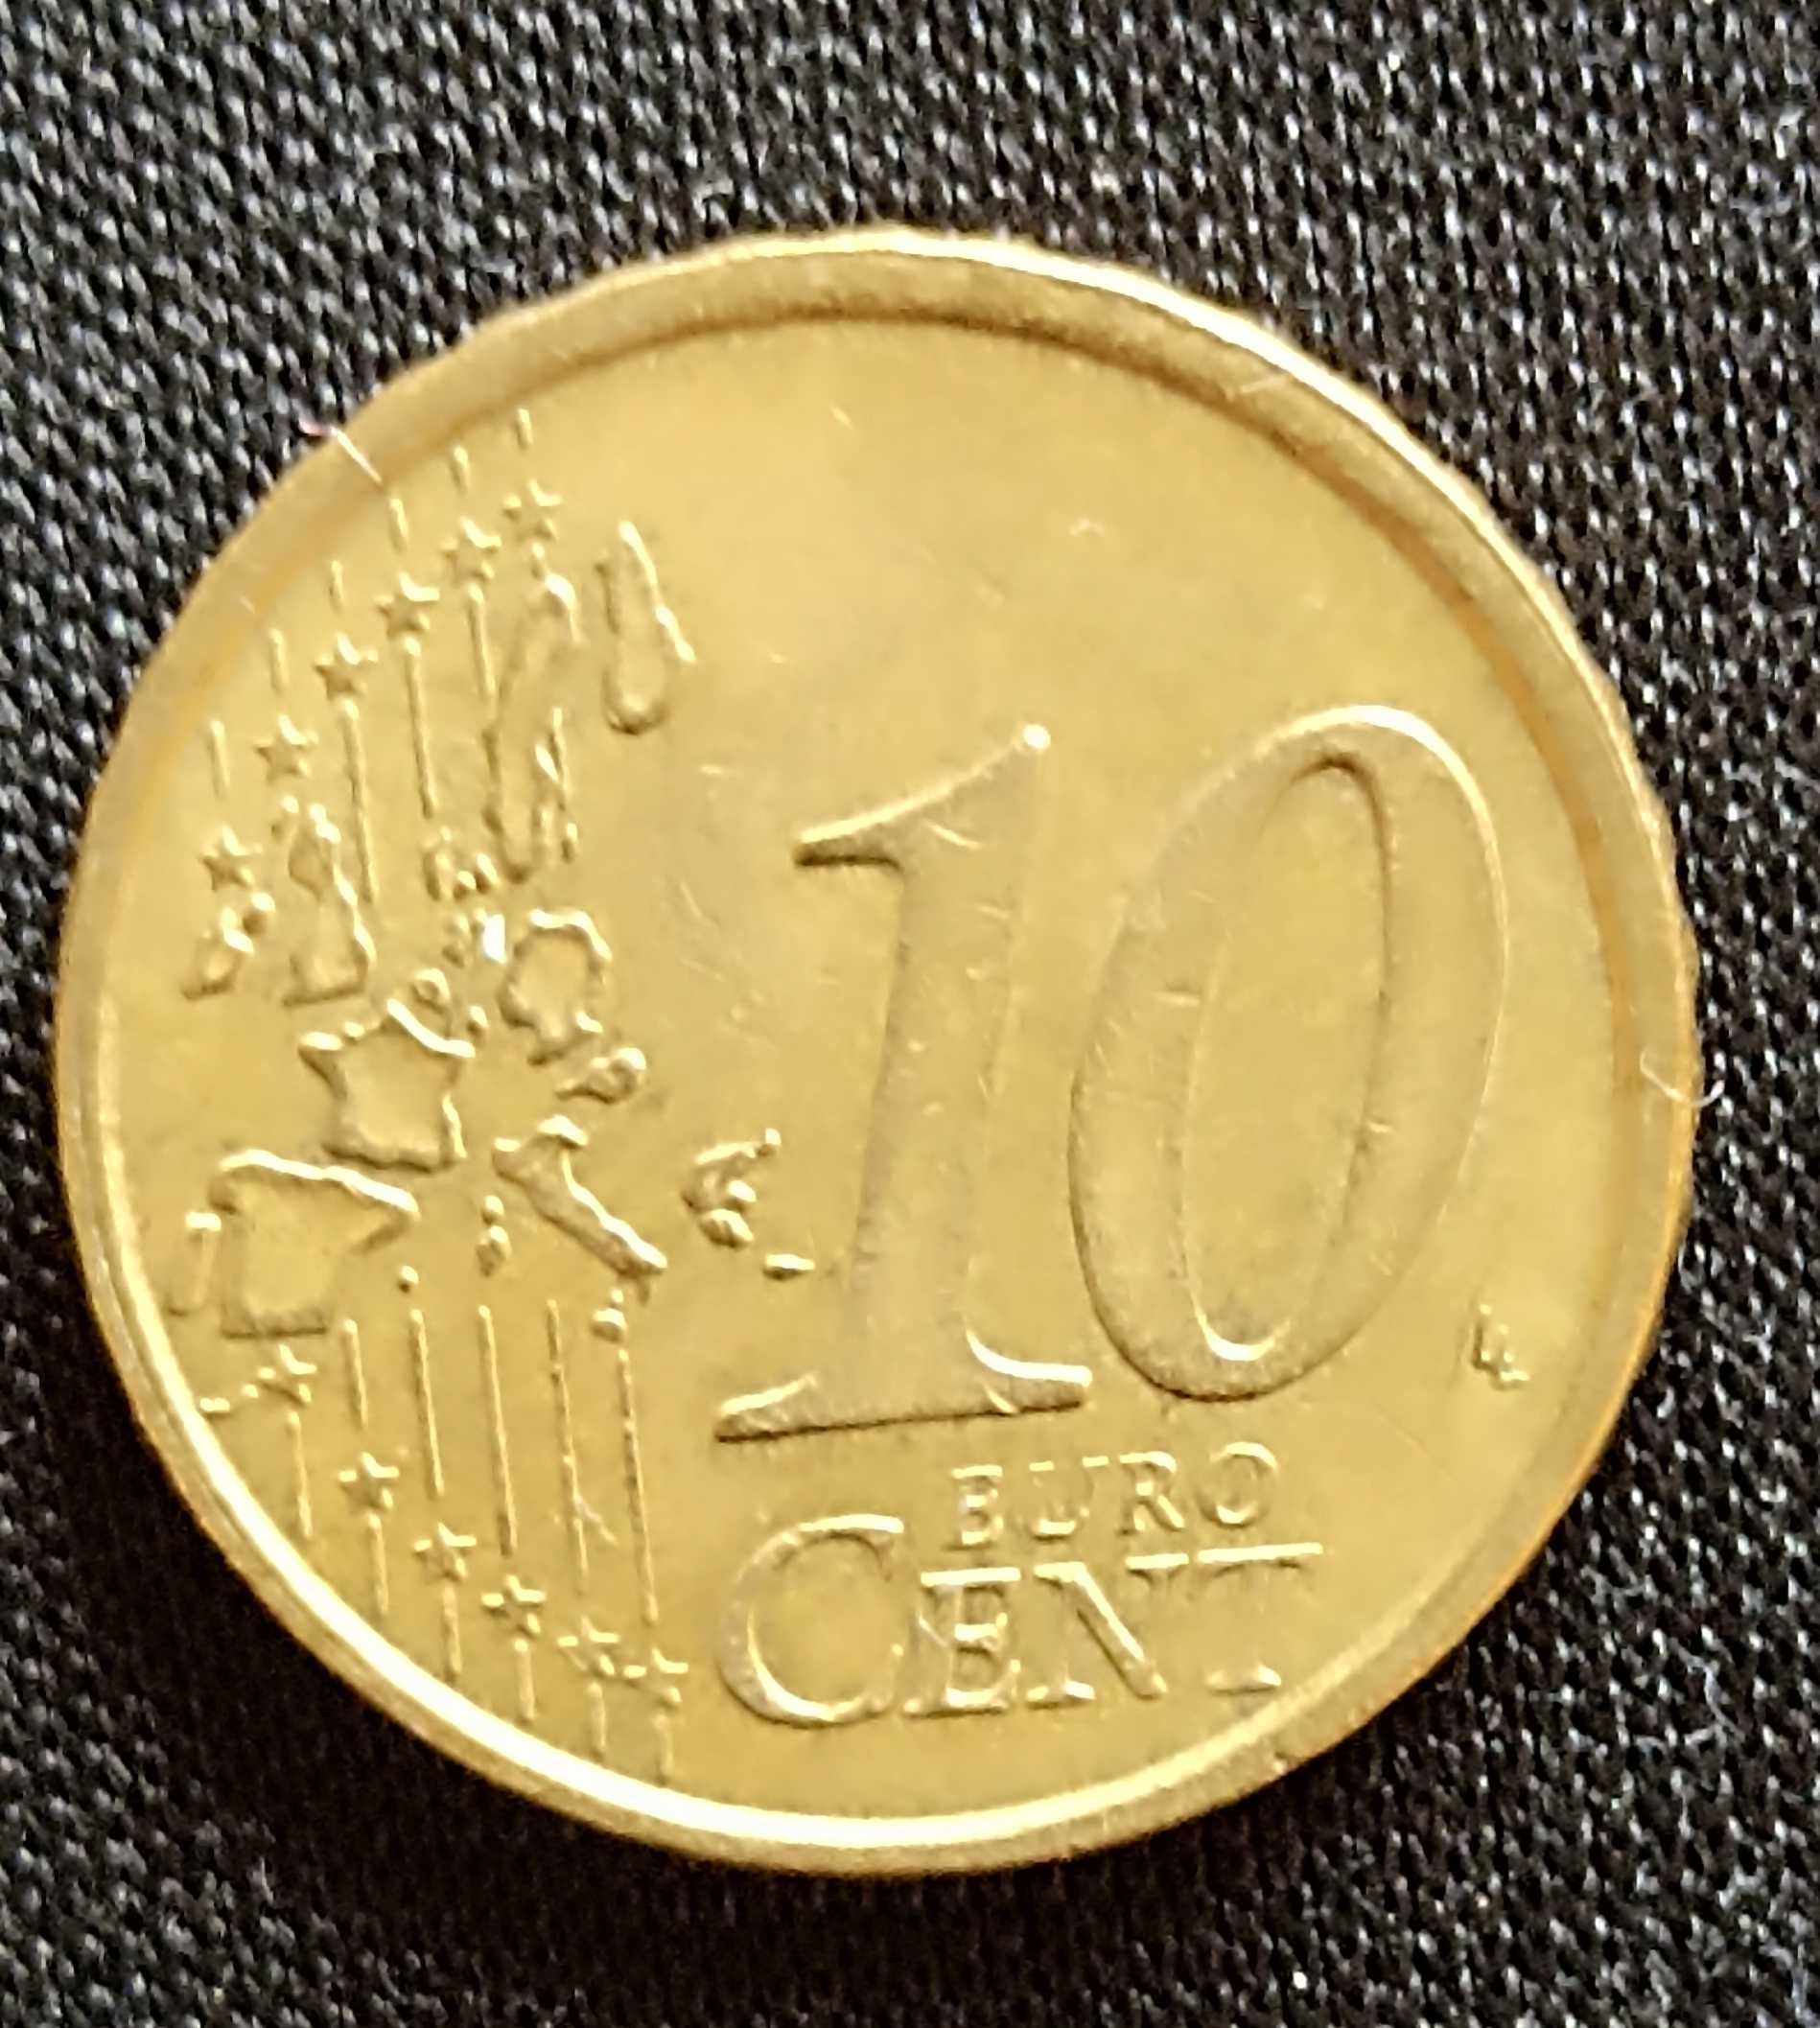 Monede €uro vechi, an 1999